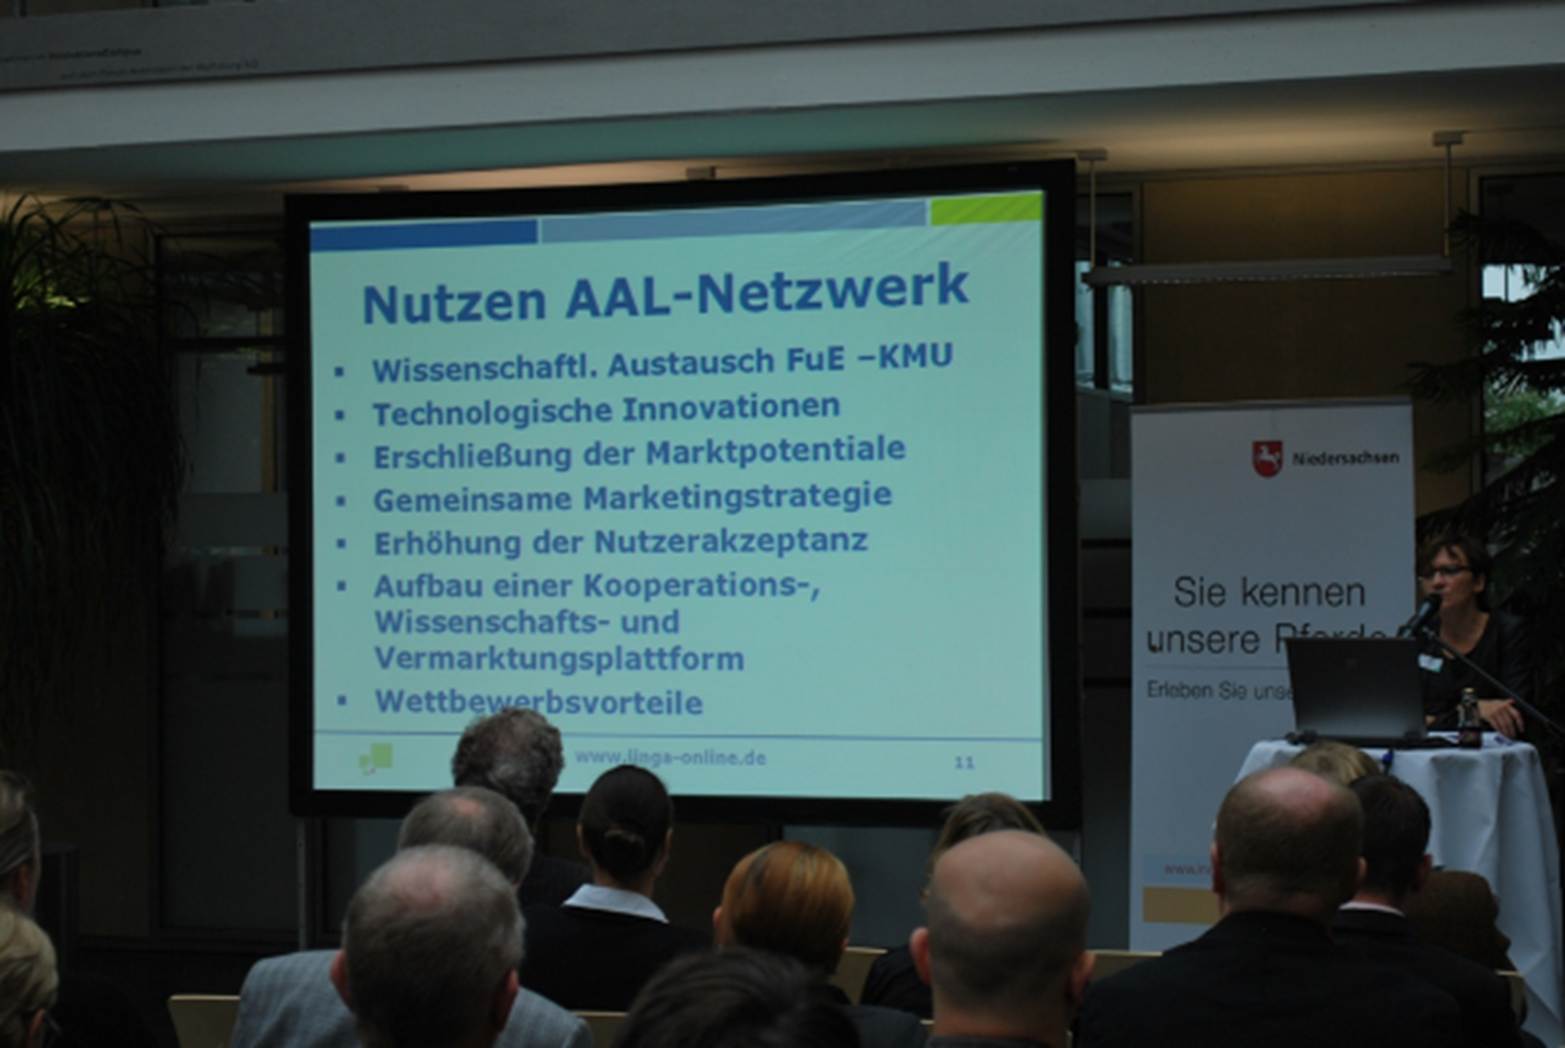 Präsentation beim Auftakt des AAL-Netzwerks